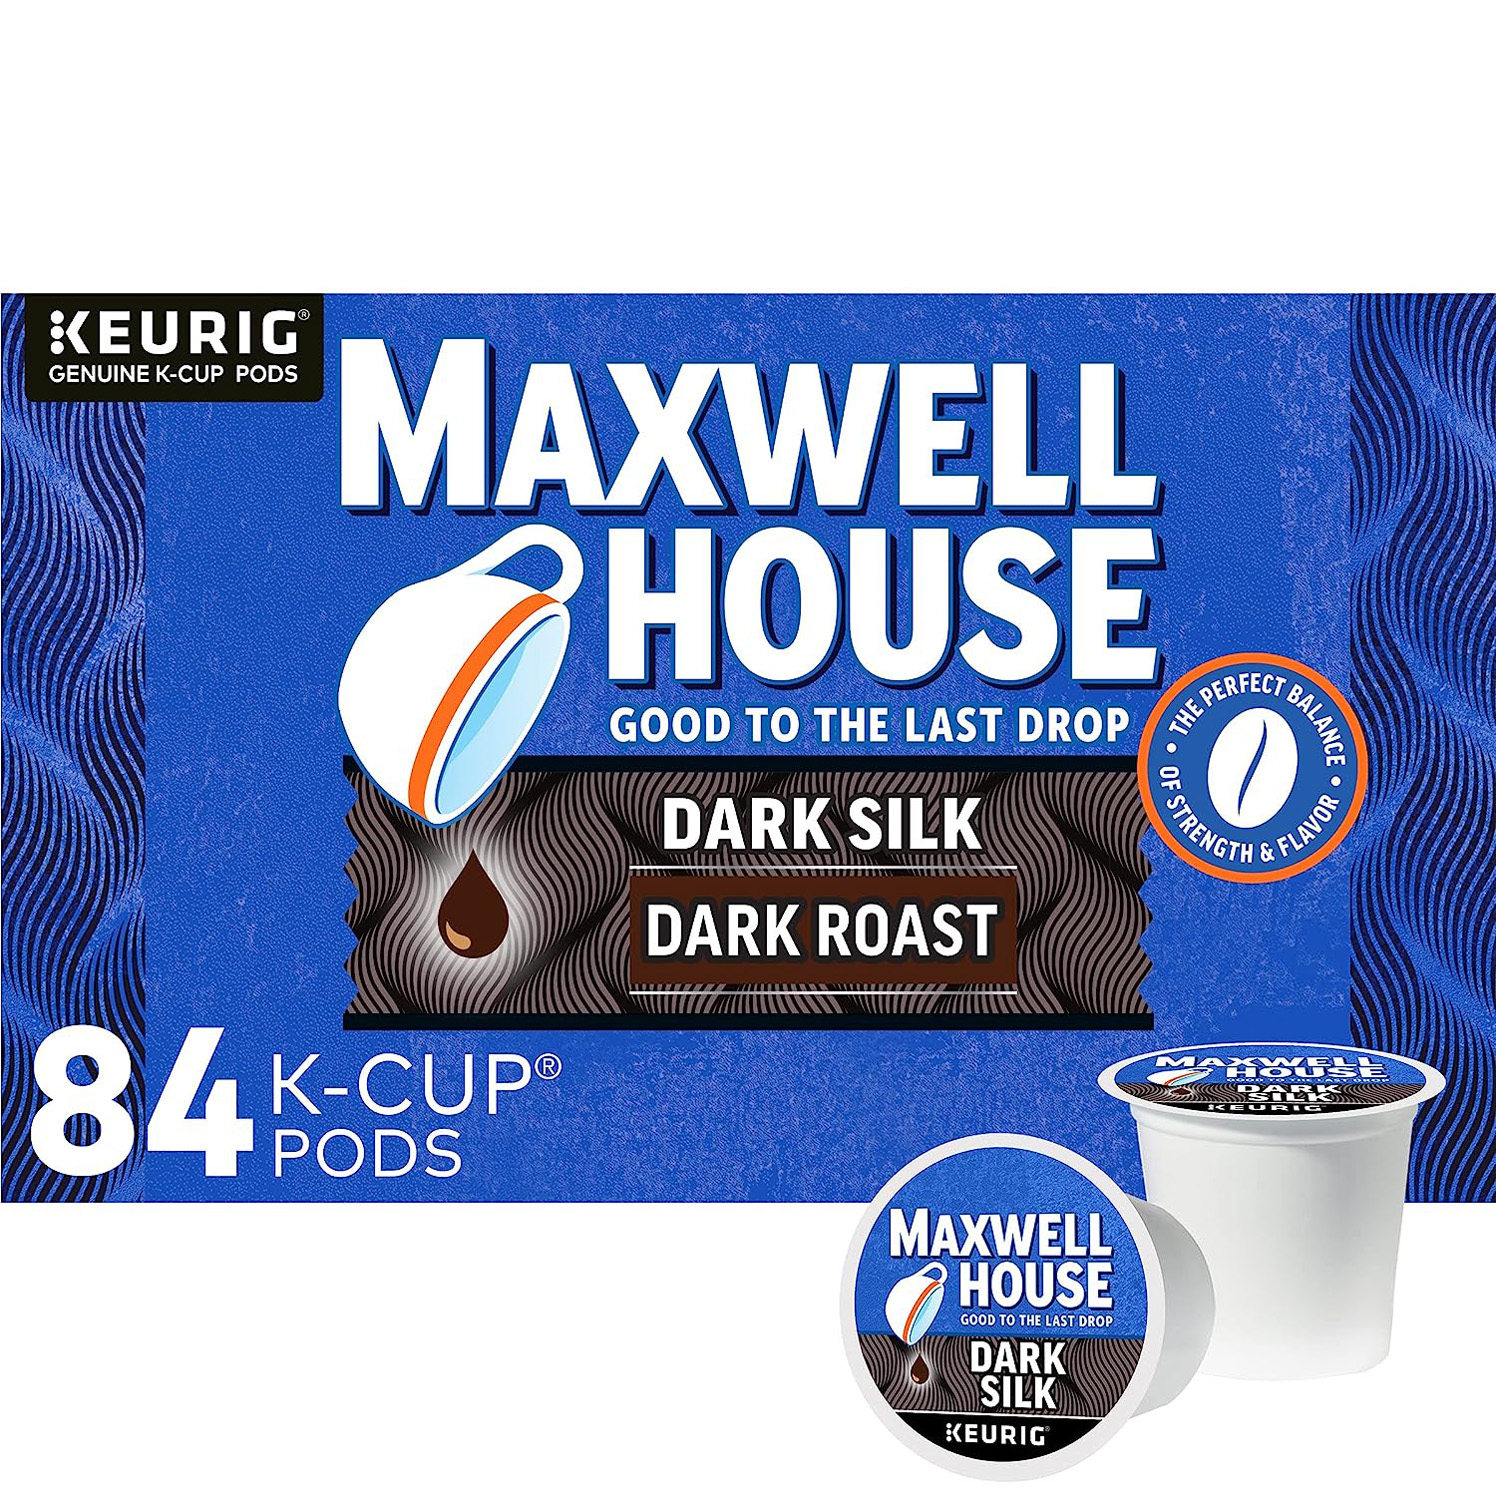 Maxwell House Dark Silk Dark Roast Keurig K-Cup Coffee Pods